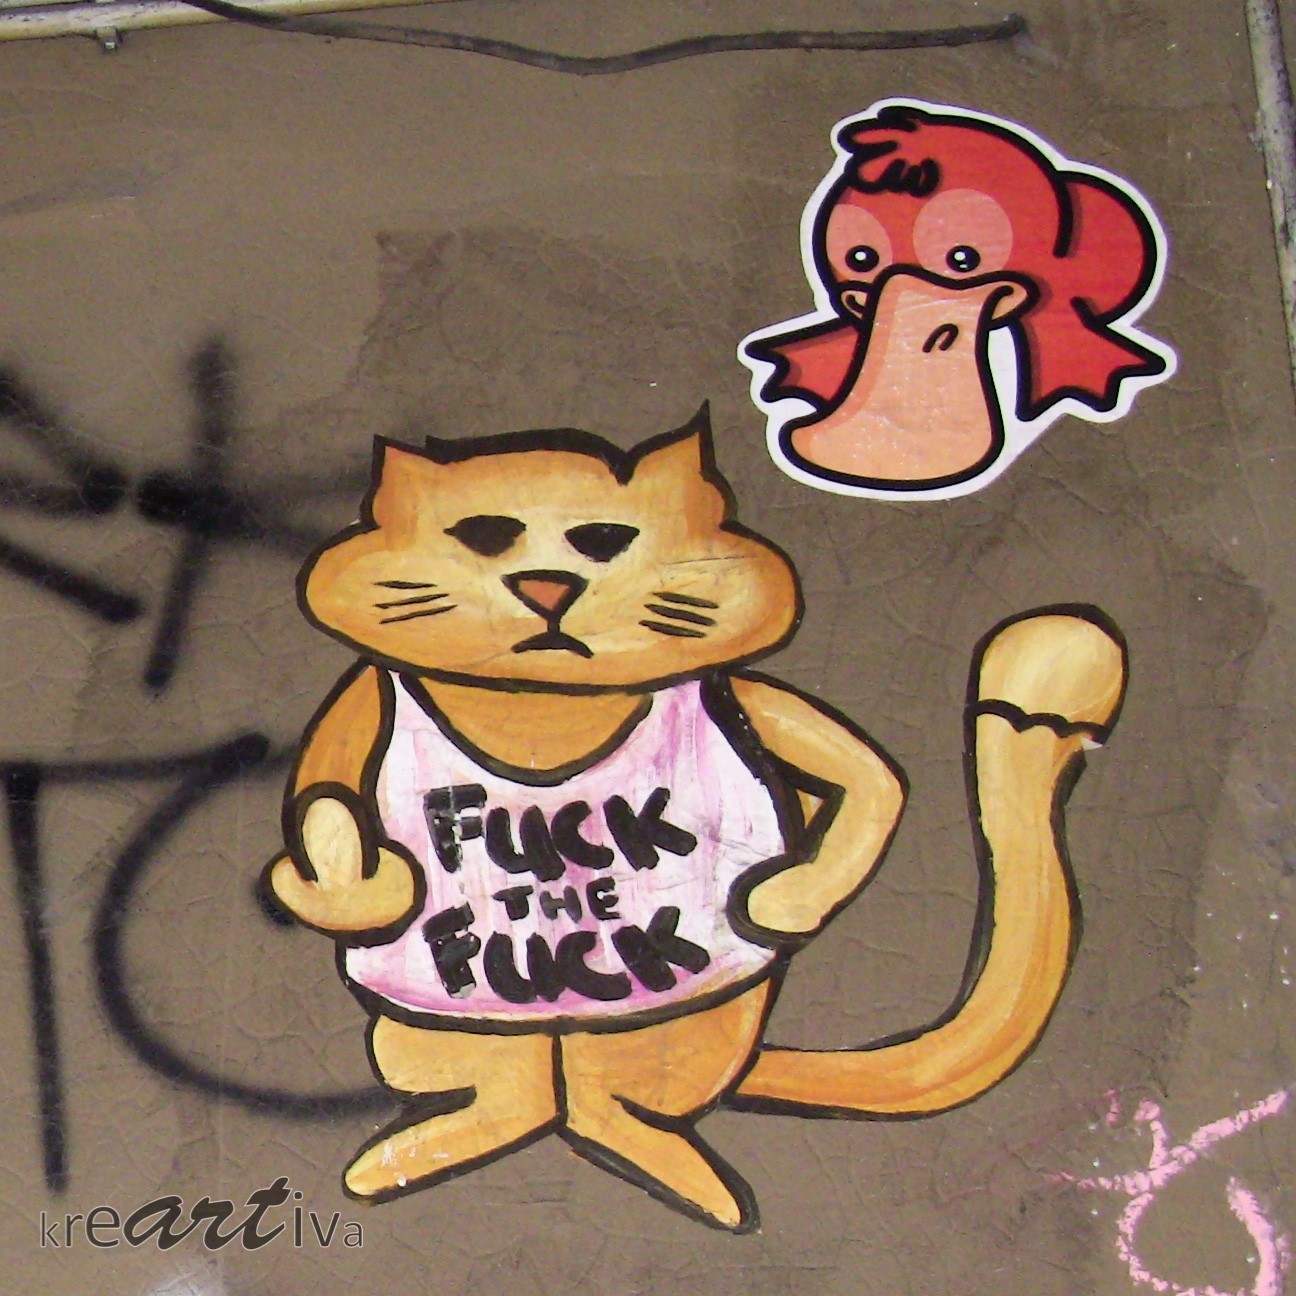 Fuck the Fuck, Berlin Deutschland 2010.